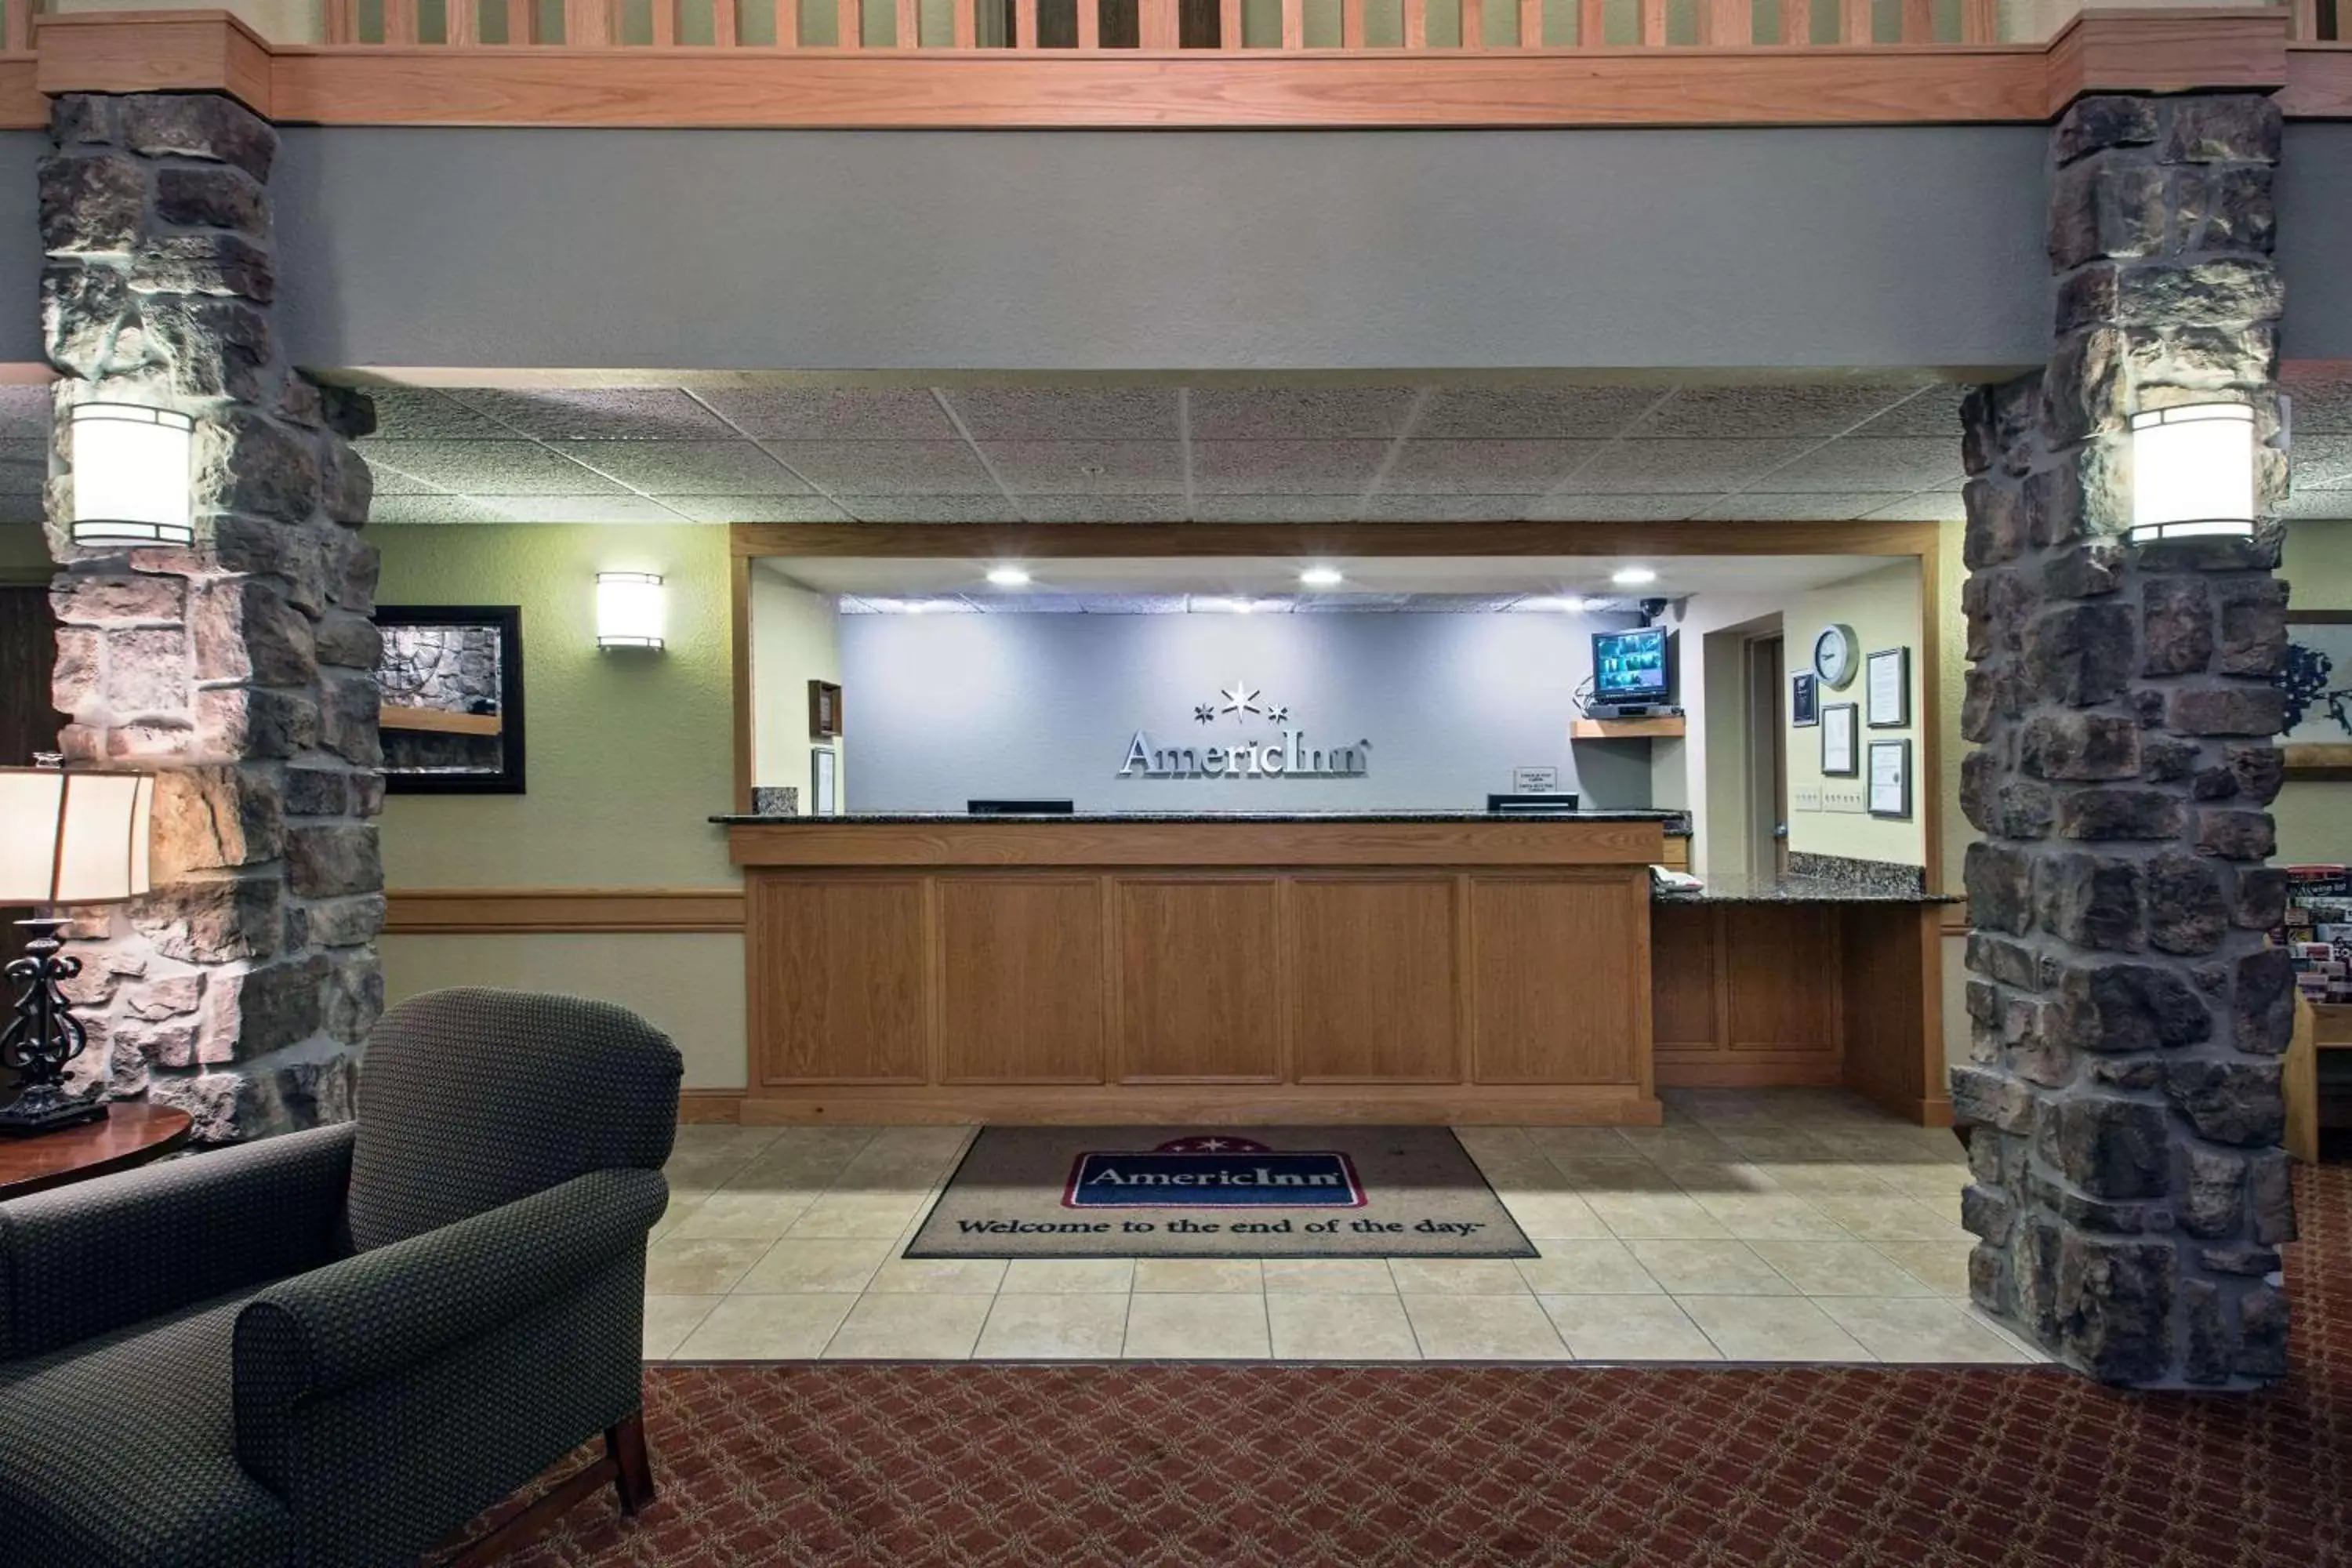 Lobby or reception, Lobby/Reception in AmericInn by Wyndham Newton